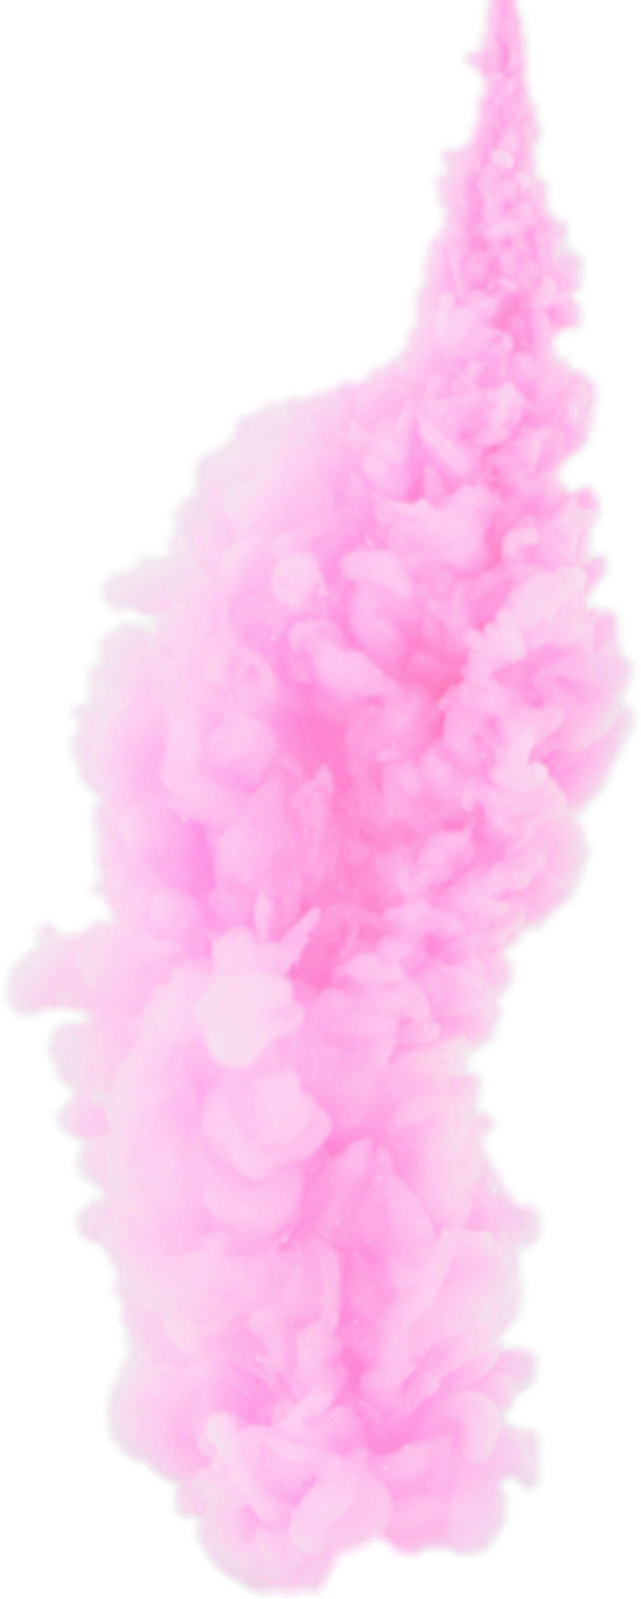 Pink Smoke Transparent Free PNG